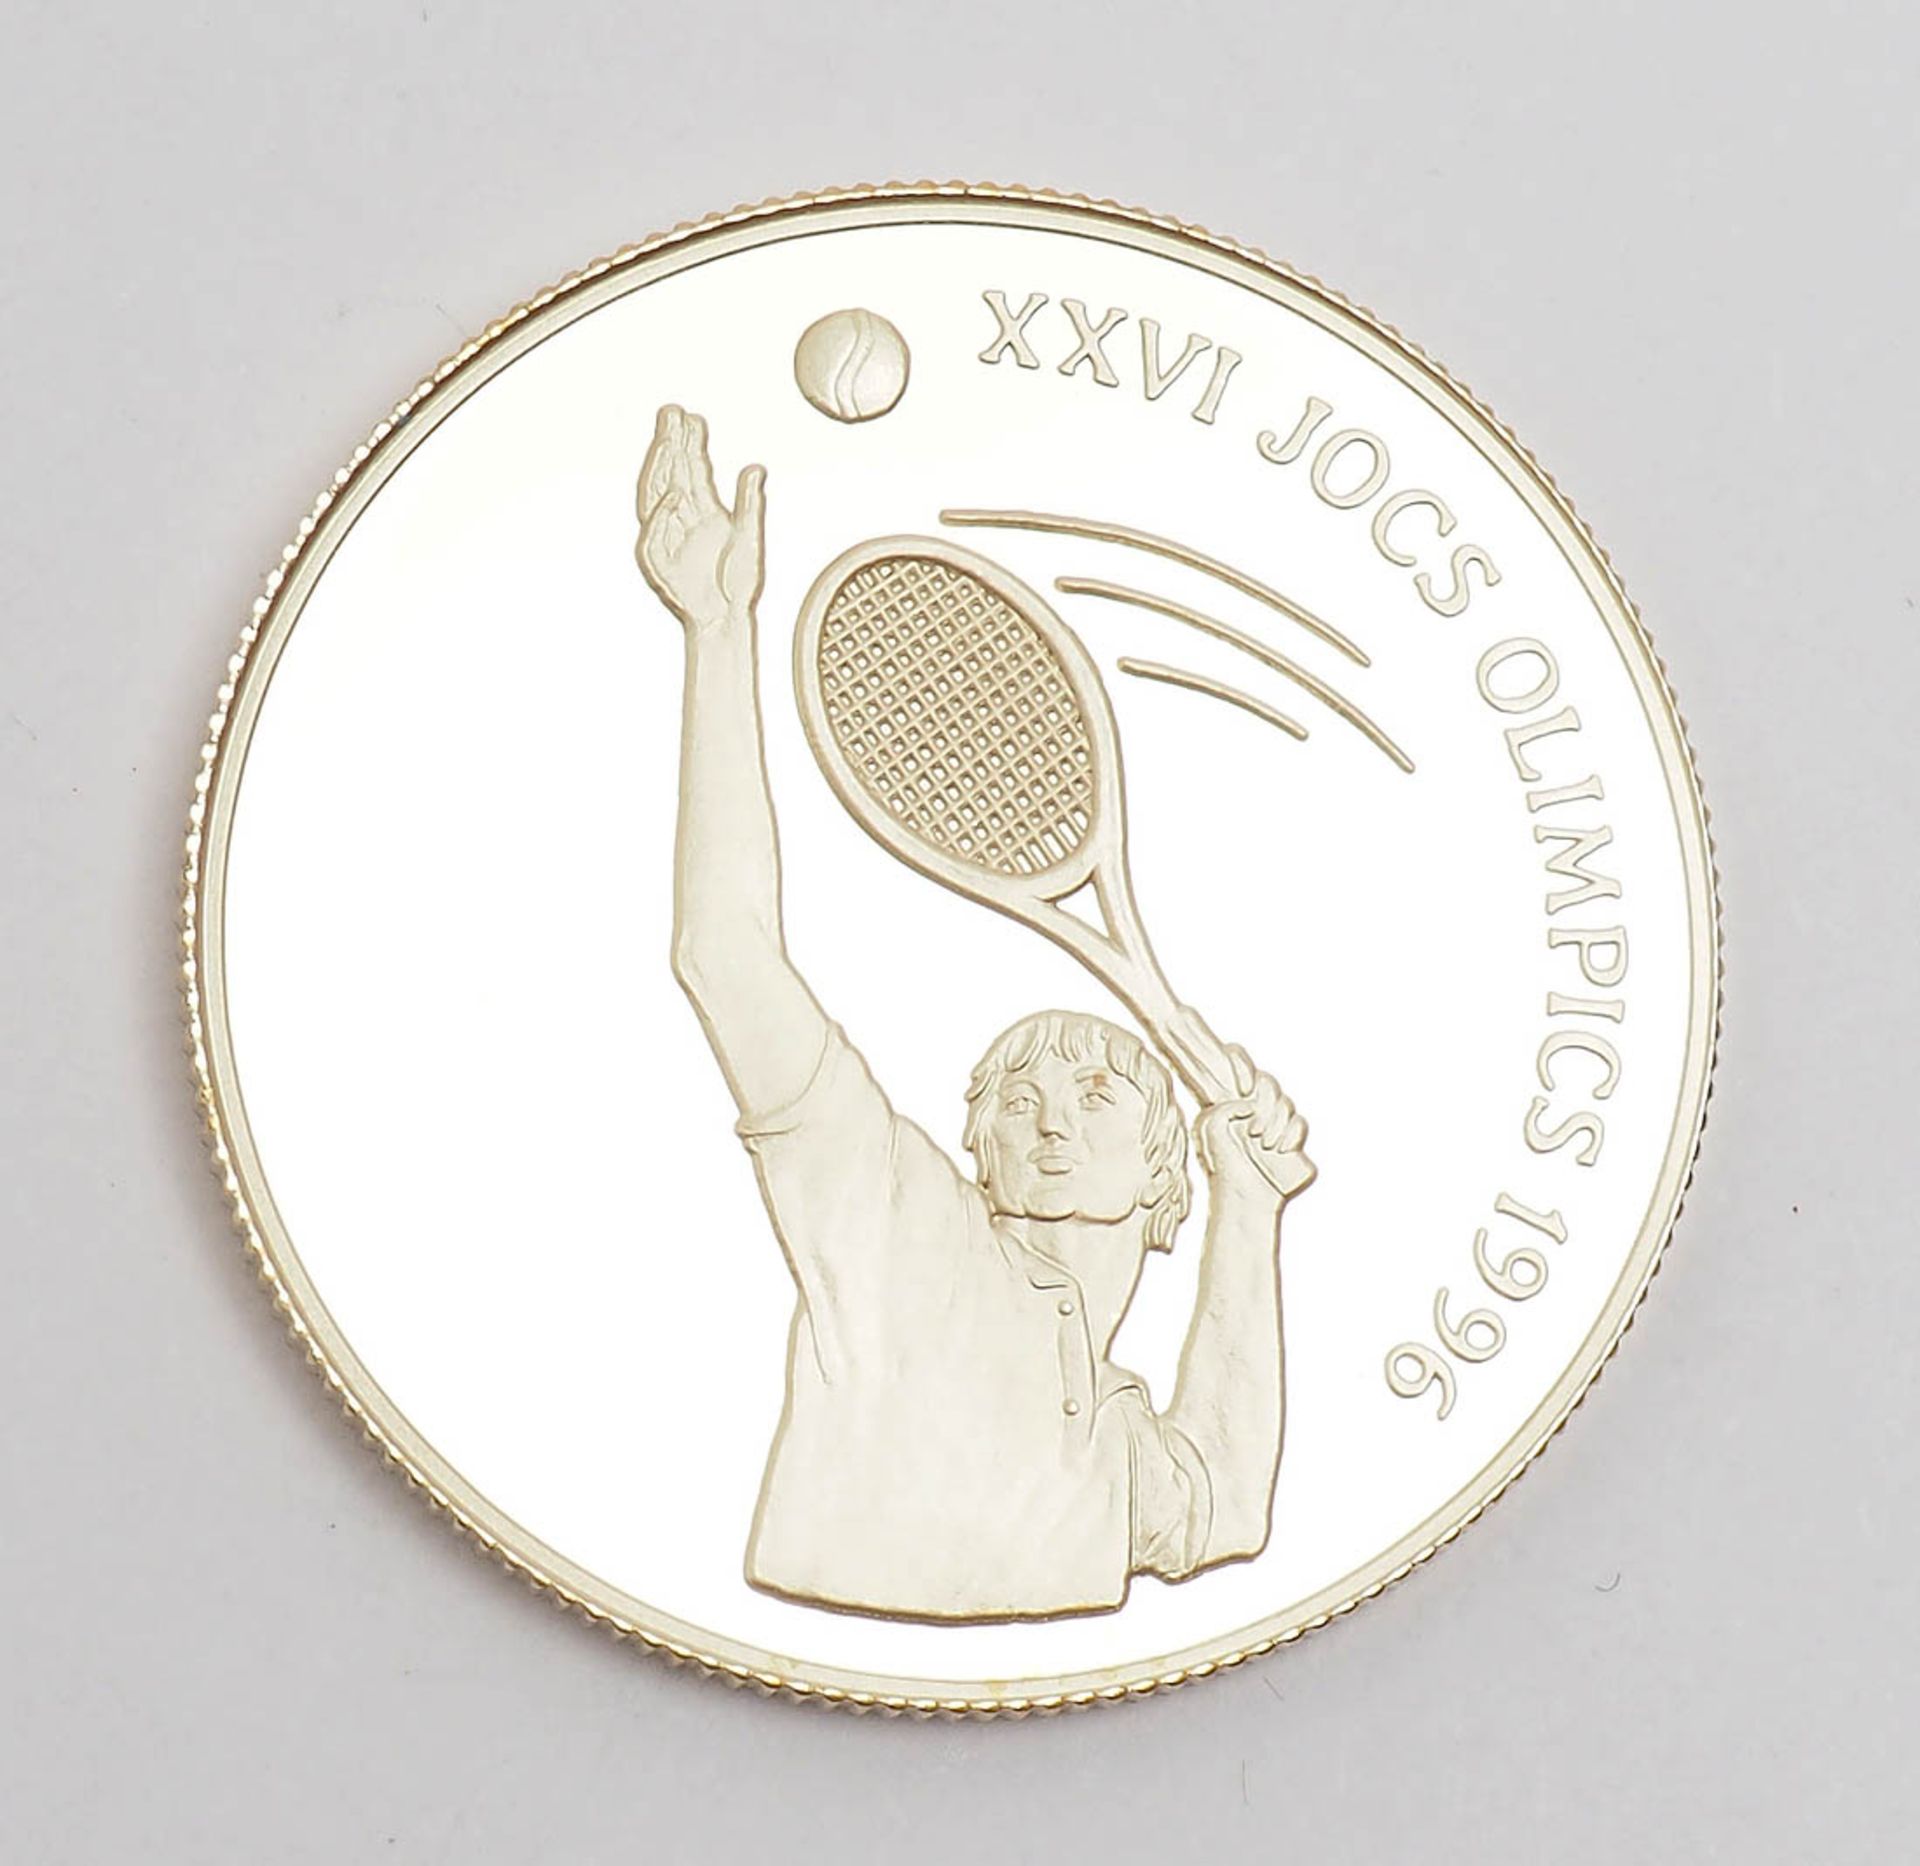 Goldmünze zu den olympischen Spielen 1994/96 Andorra, Nennwert 25 Diners. - Bild 2 aus 3